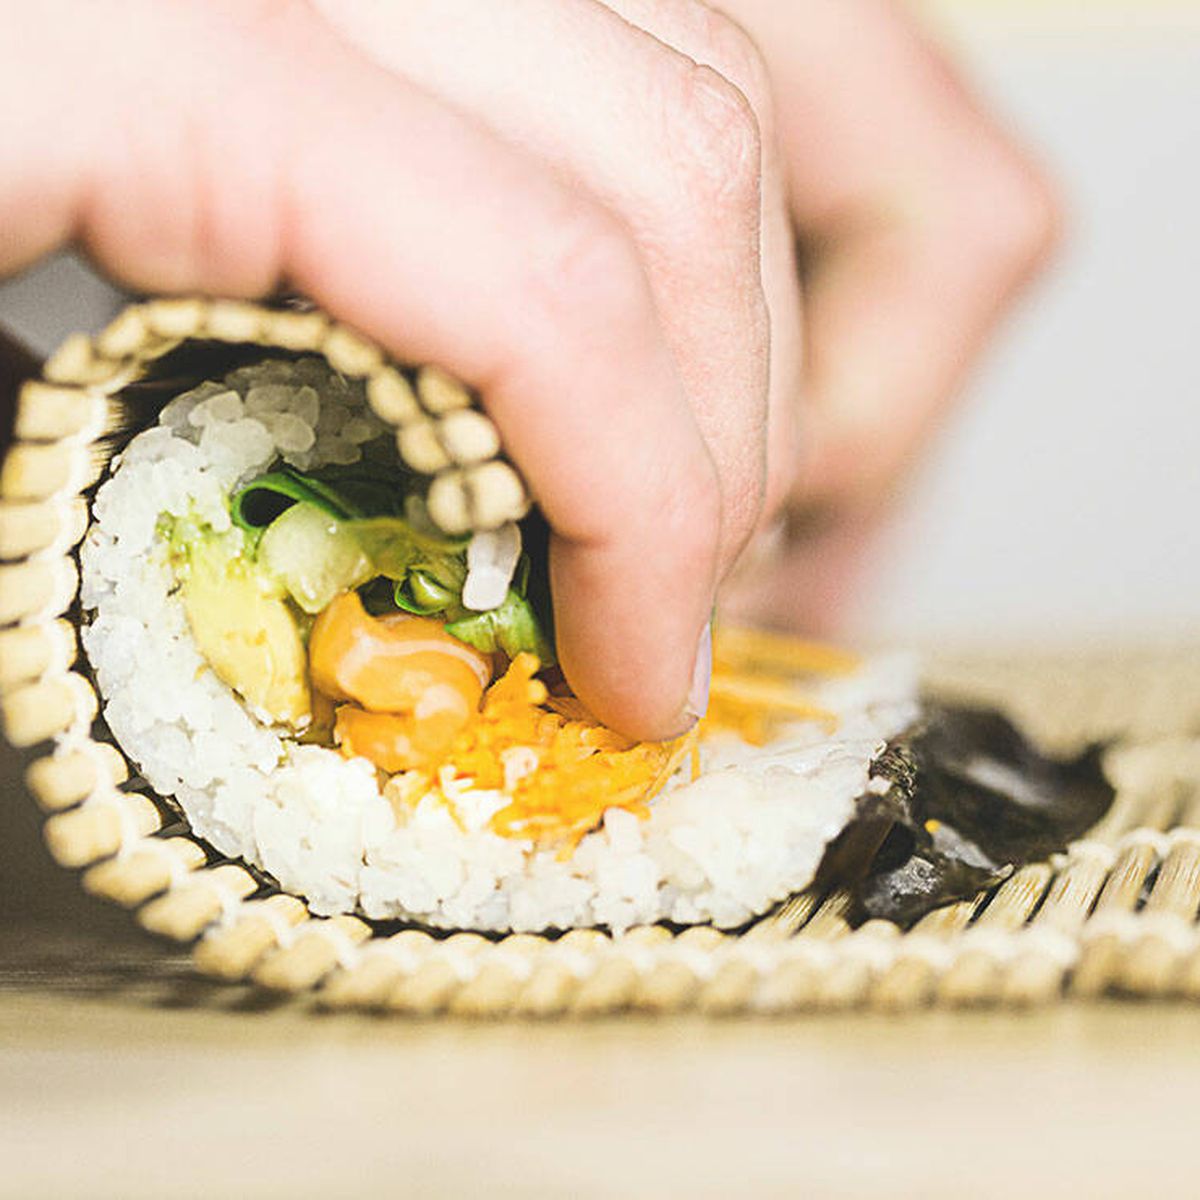 Kit para hacer Sushi, Kit completo para hacer Sushi de 10 piezas